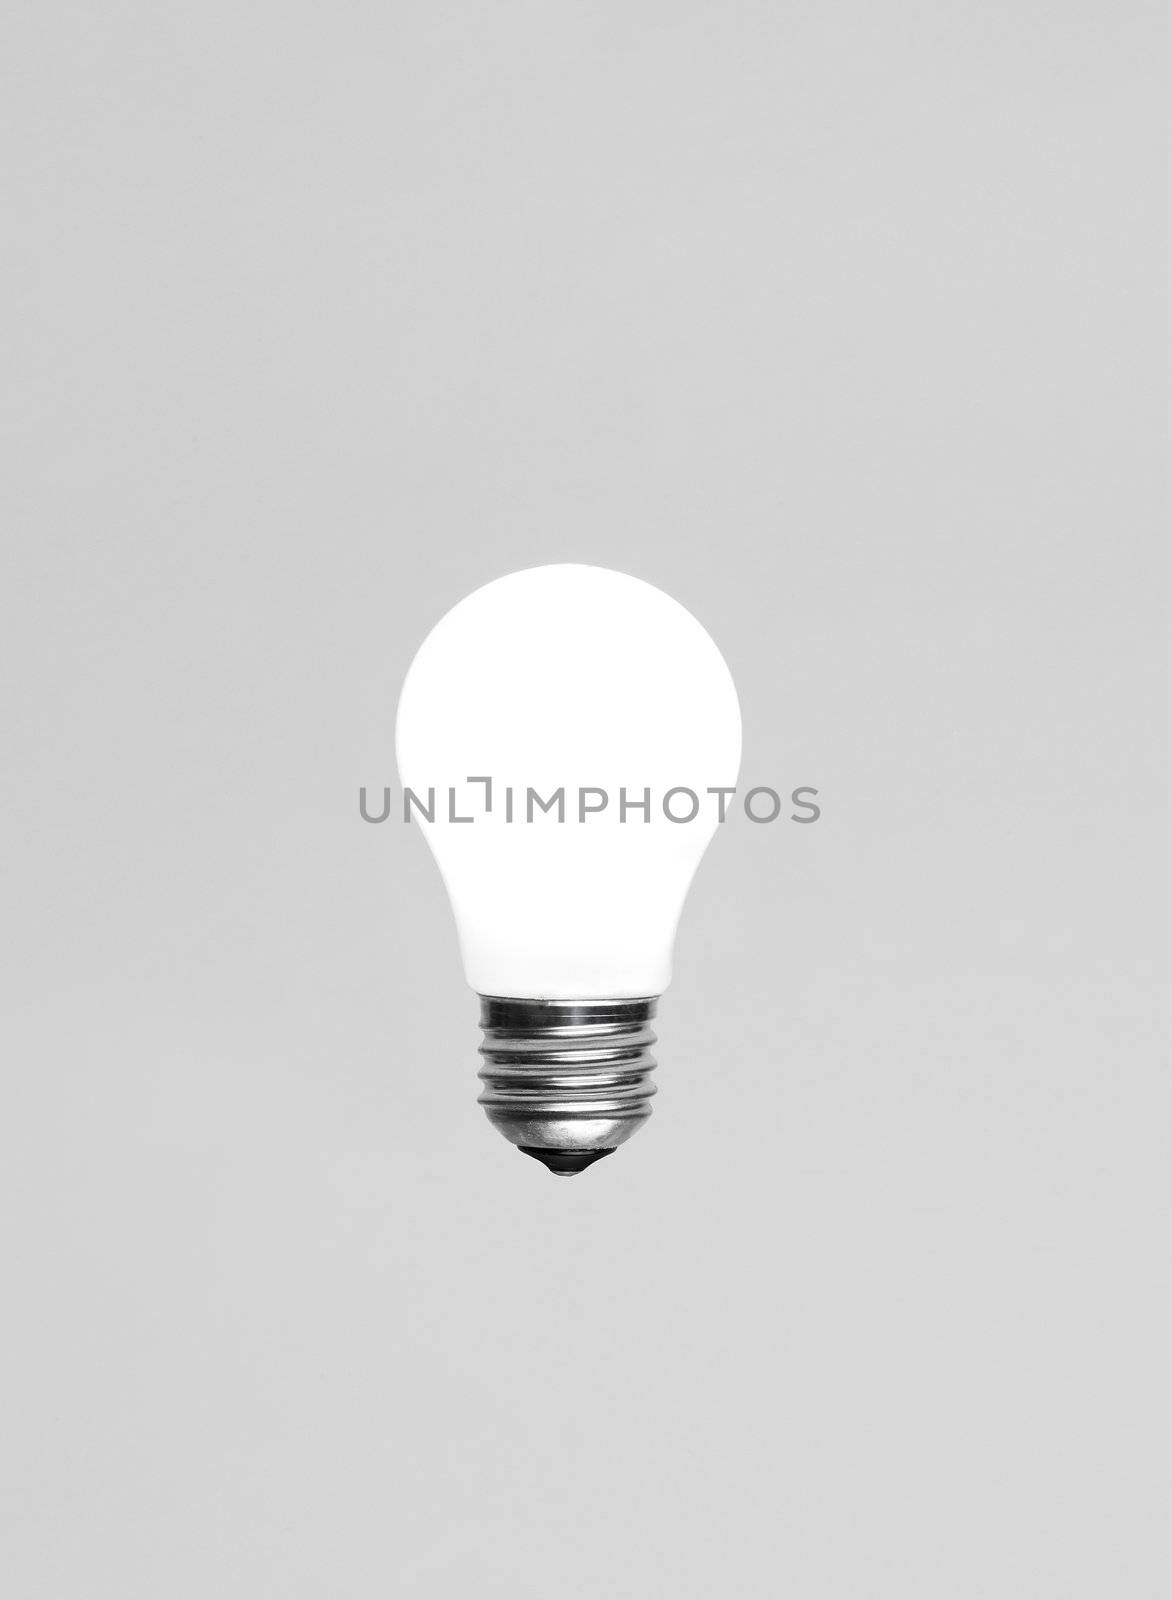 Singel glowing light bulb by gemenacom